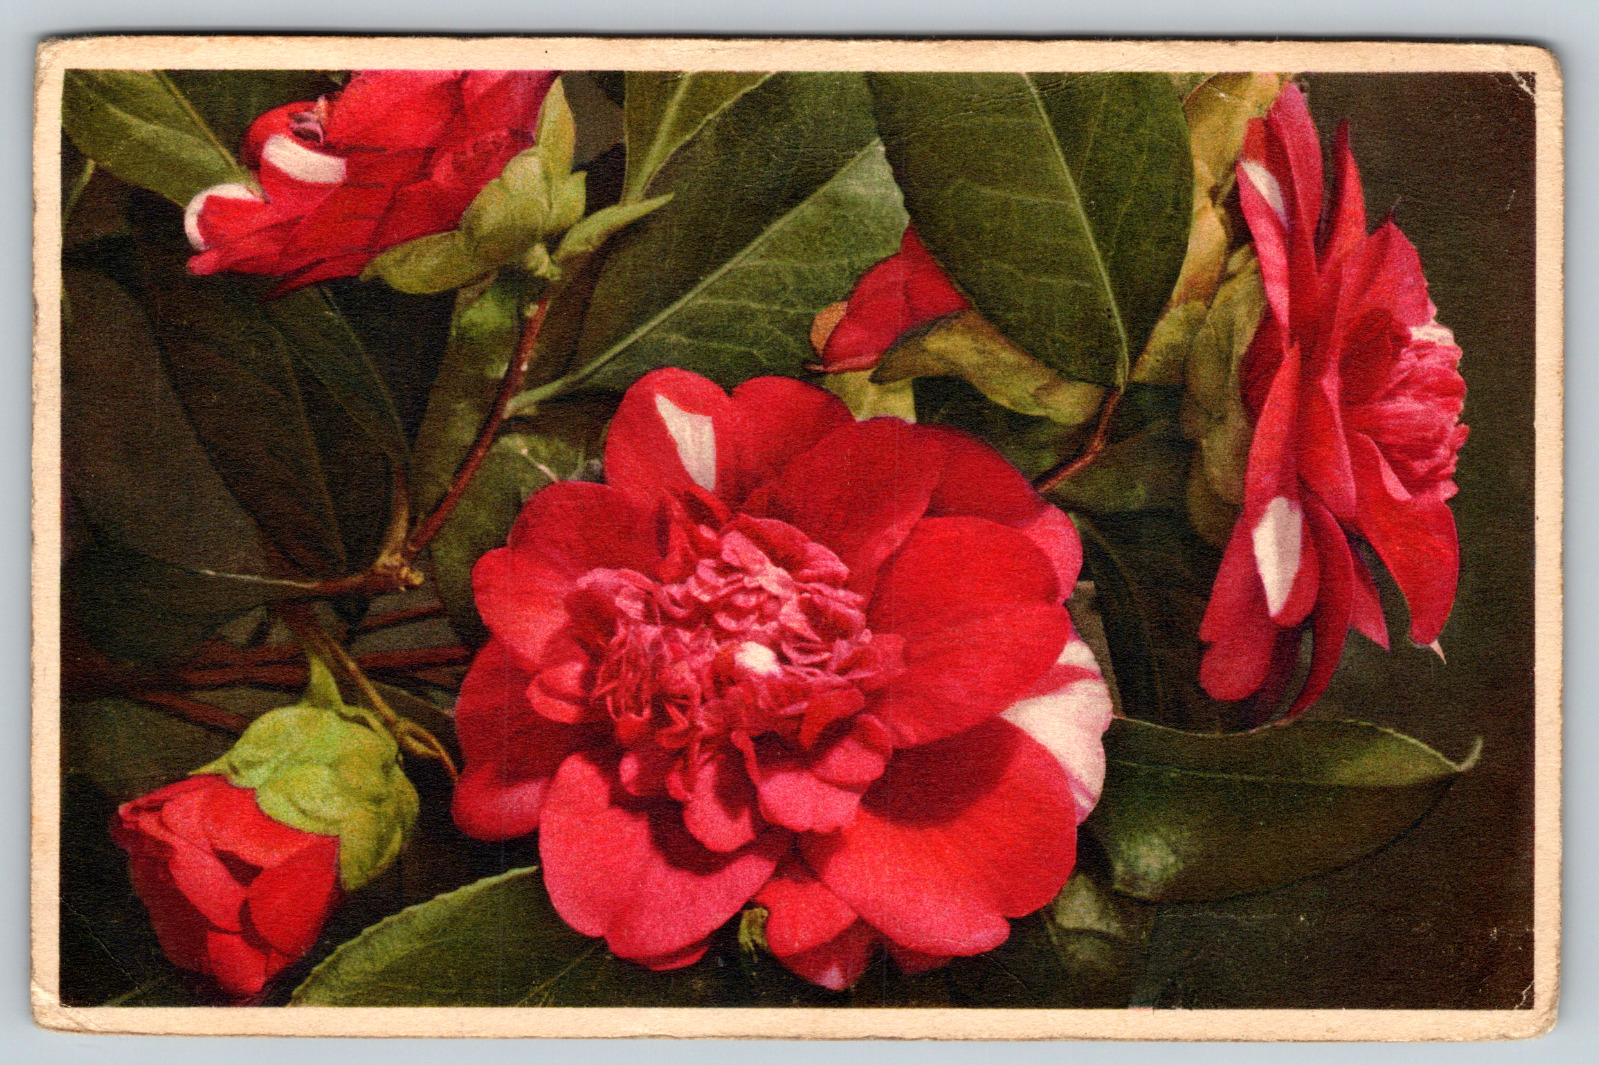 c1950s Pink Flowers Boquet Camellia Japonica Antique Postcard